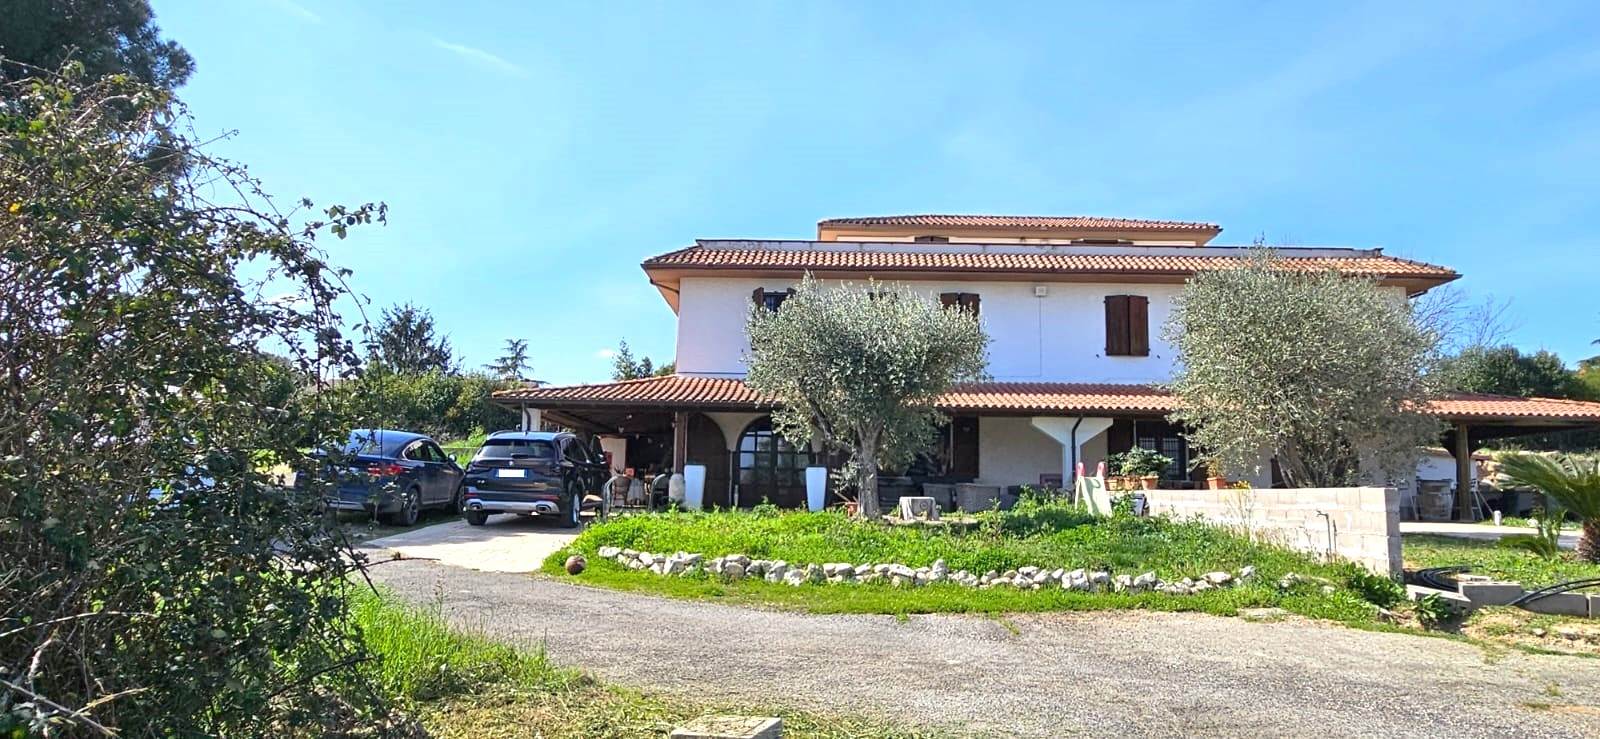 Villa Bifamiliare in vendita a Fiano Romano, 4 locali, prezzo € 395.000 | PortaleAgenzieImmobiliari.it